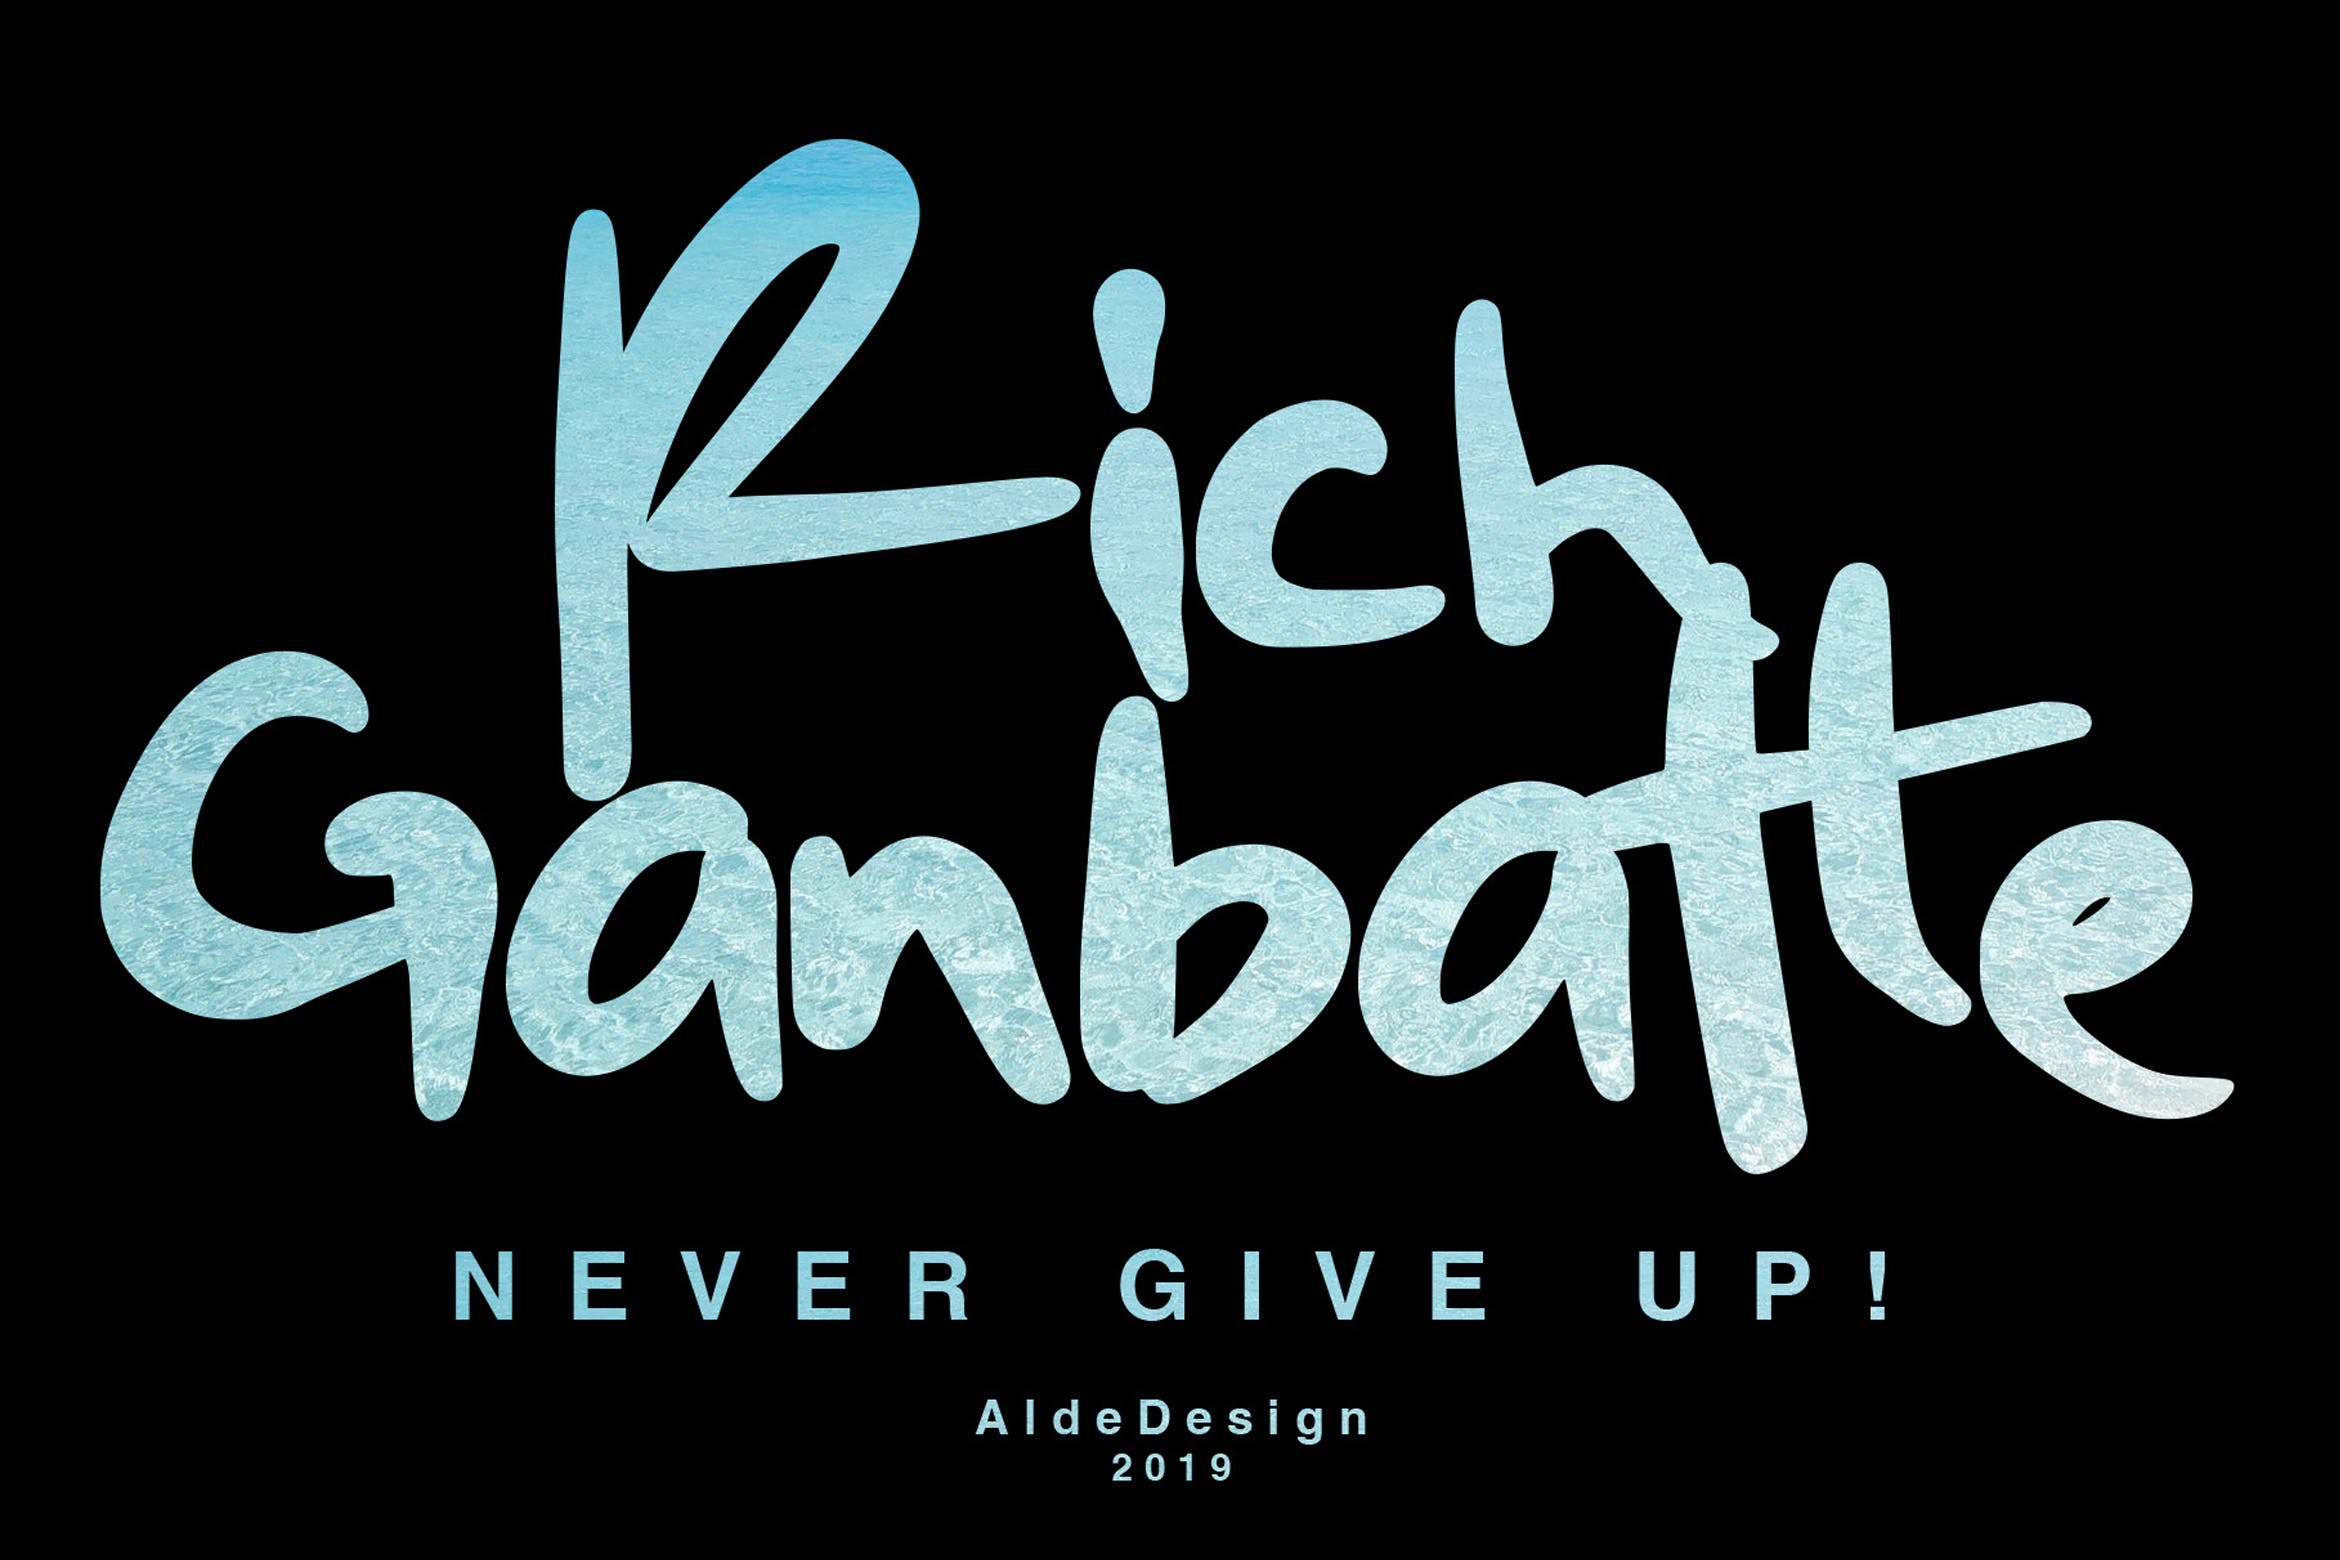 平面设计英文画笔手写字体蚂蚁素材精选下载 Rich Ganbatte – Logotype Font插图